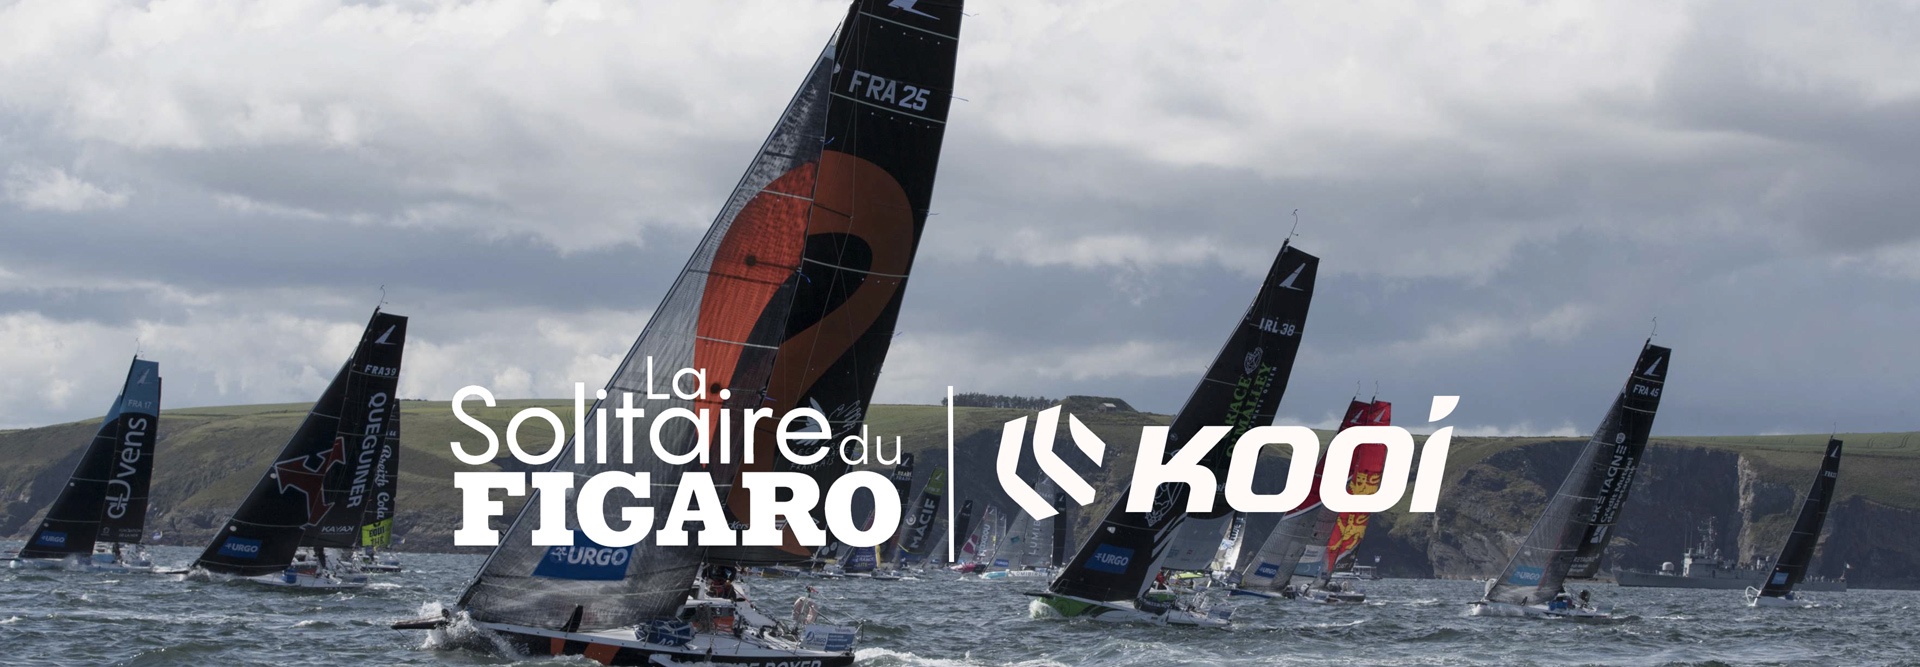 Kooi Official Supplier Van La Solitaire Du Figaro